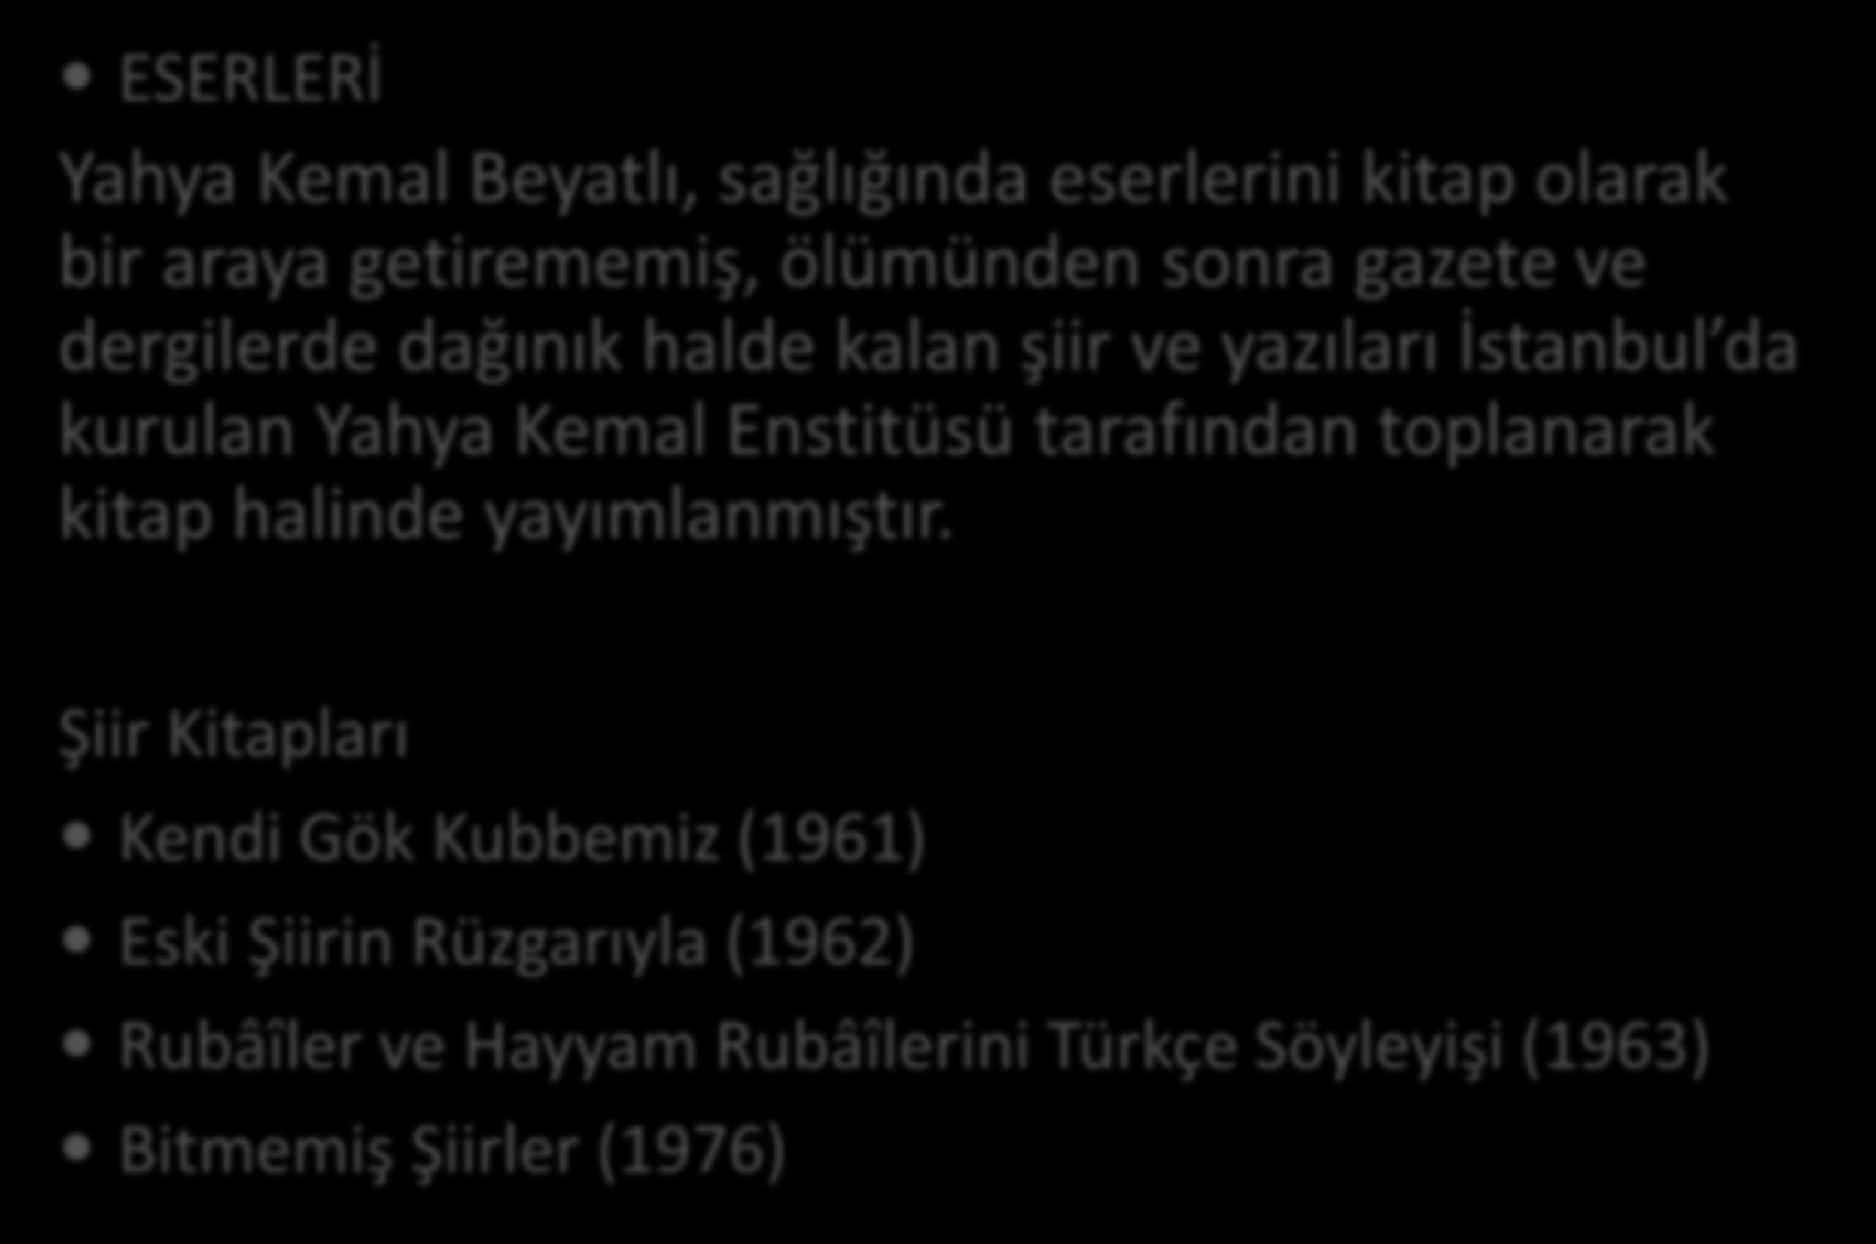 ESERLERİ Yahya Kemal Beyatlı, sağlığında eserlerini kitap olarak bir araya getirememiş, ölümünden sonra gazete ve dergilerde dağınık halde kalan şiir ve yazıları İstanbul da kurulan Yahya Kemal